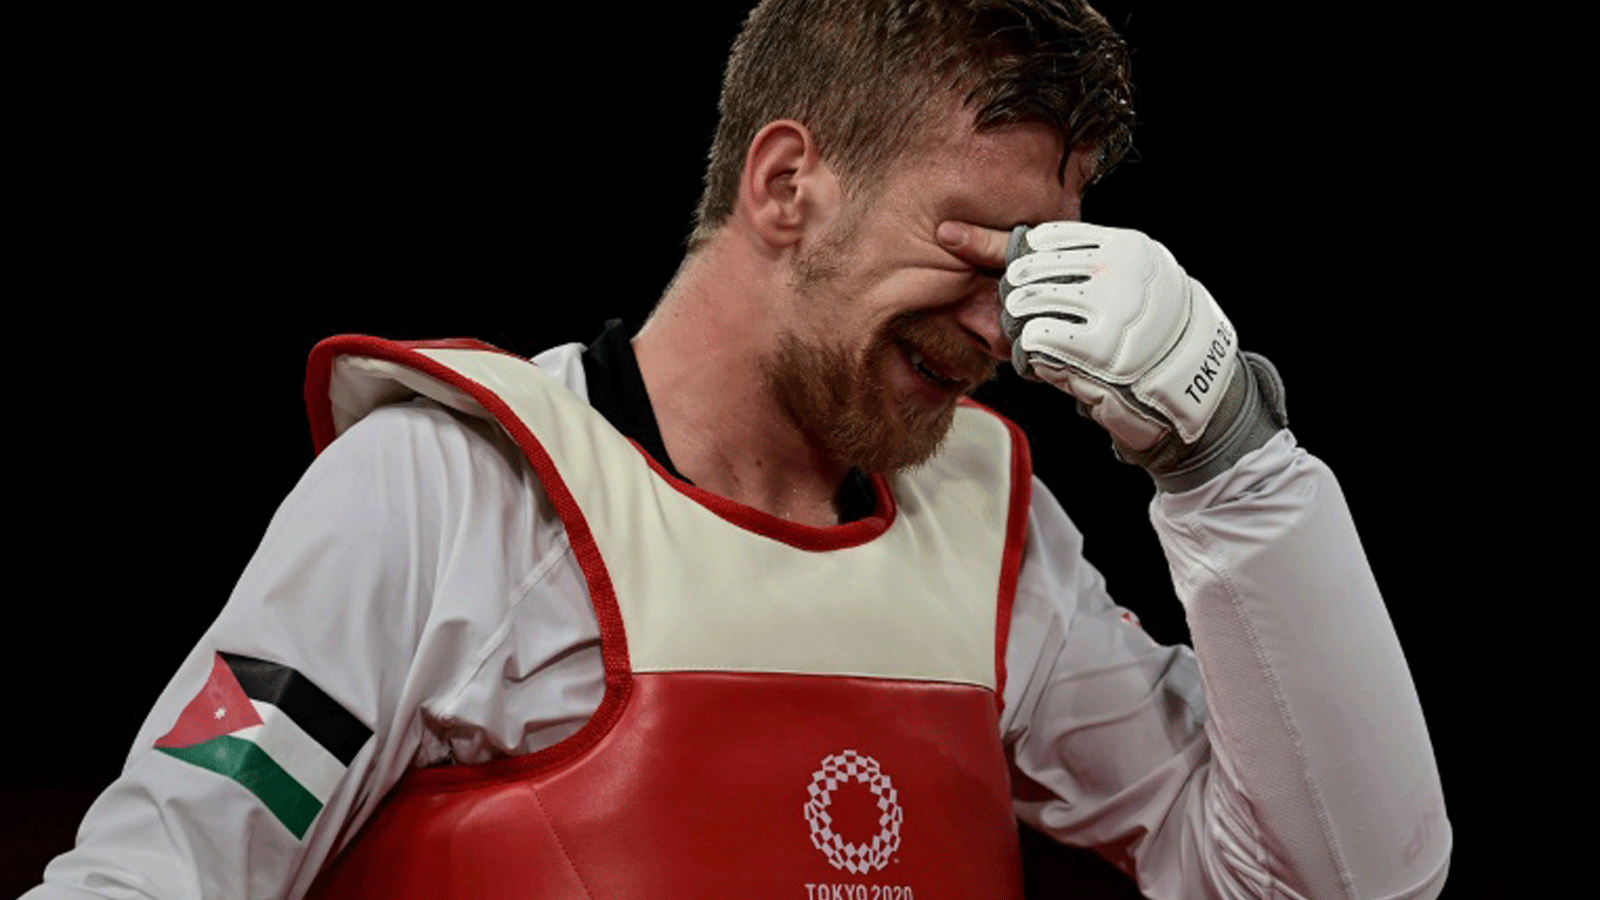 الاردني صالح الشرباتي يبكي بعد تأهله الى نهائي مسابقة التايكواندو لوزن -80 كلغ في أولمبياد طوكيو في 26 نموز/يوليو 2021